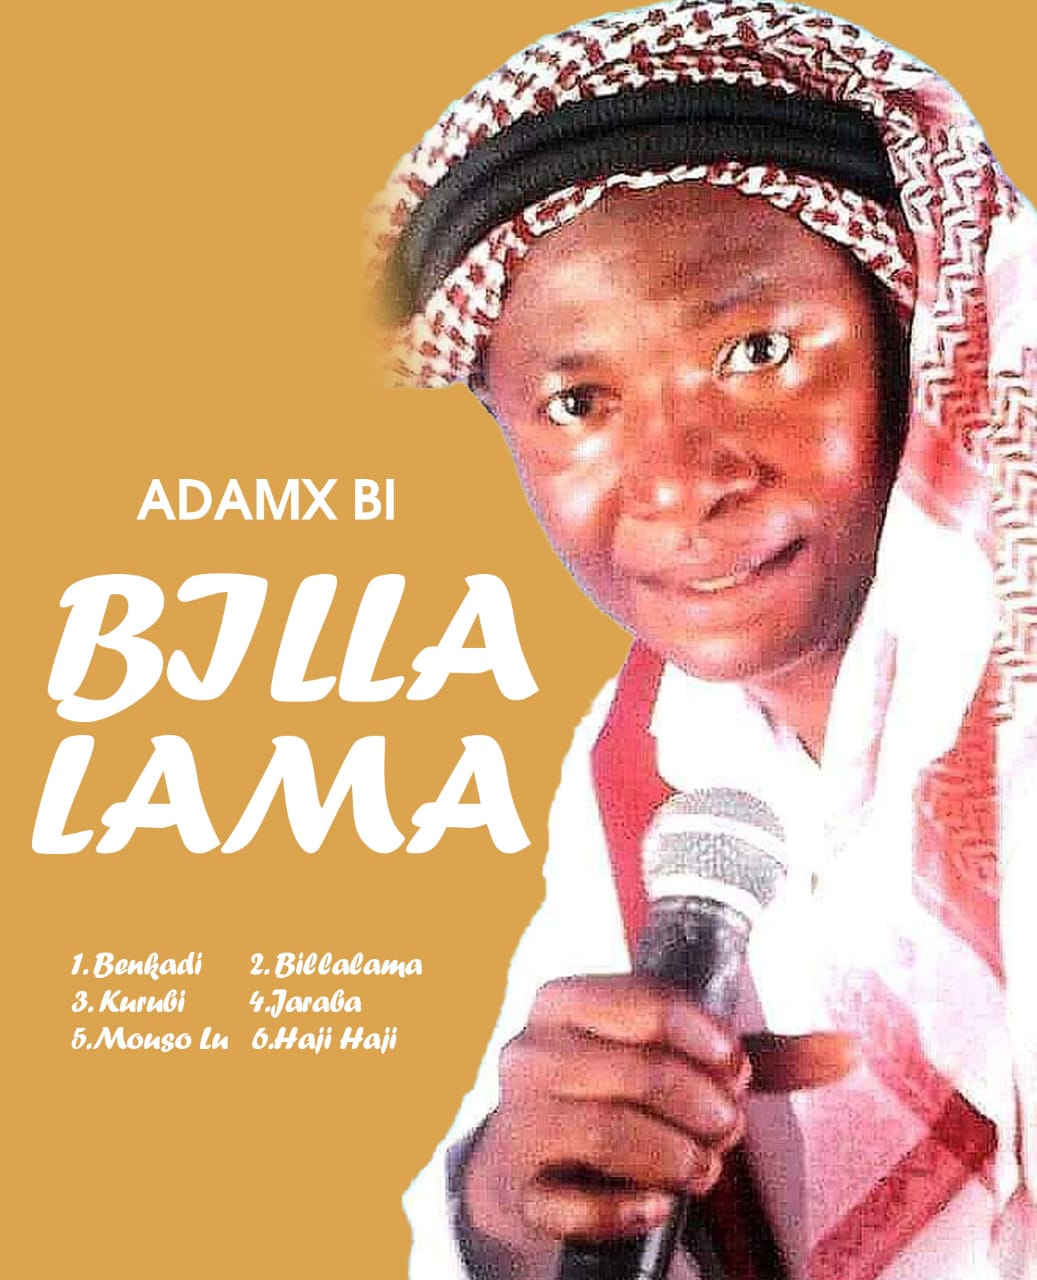 BILLALAMA by Adamx Bi | Album